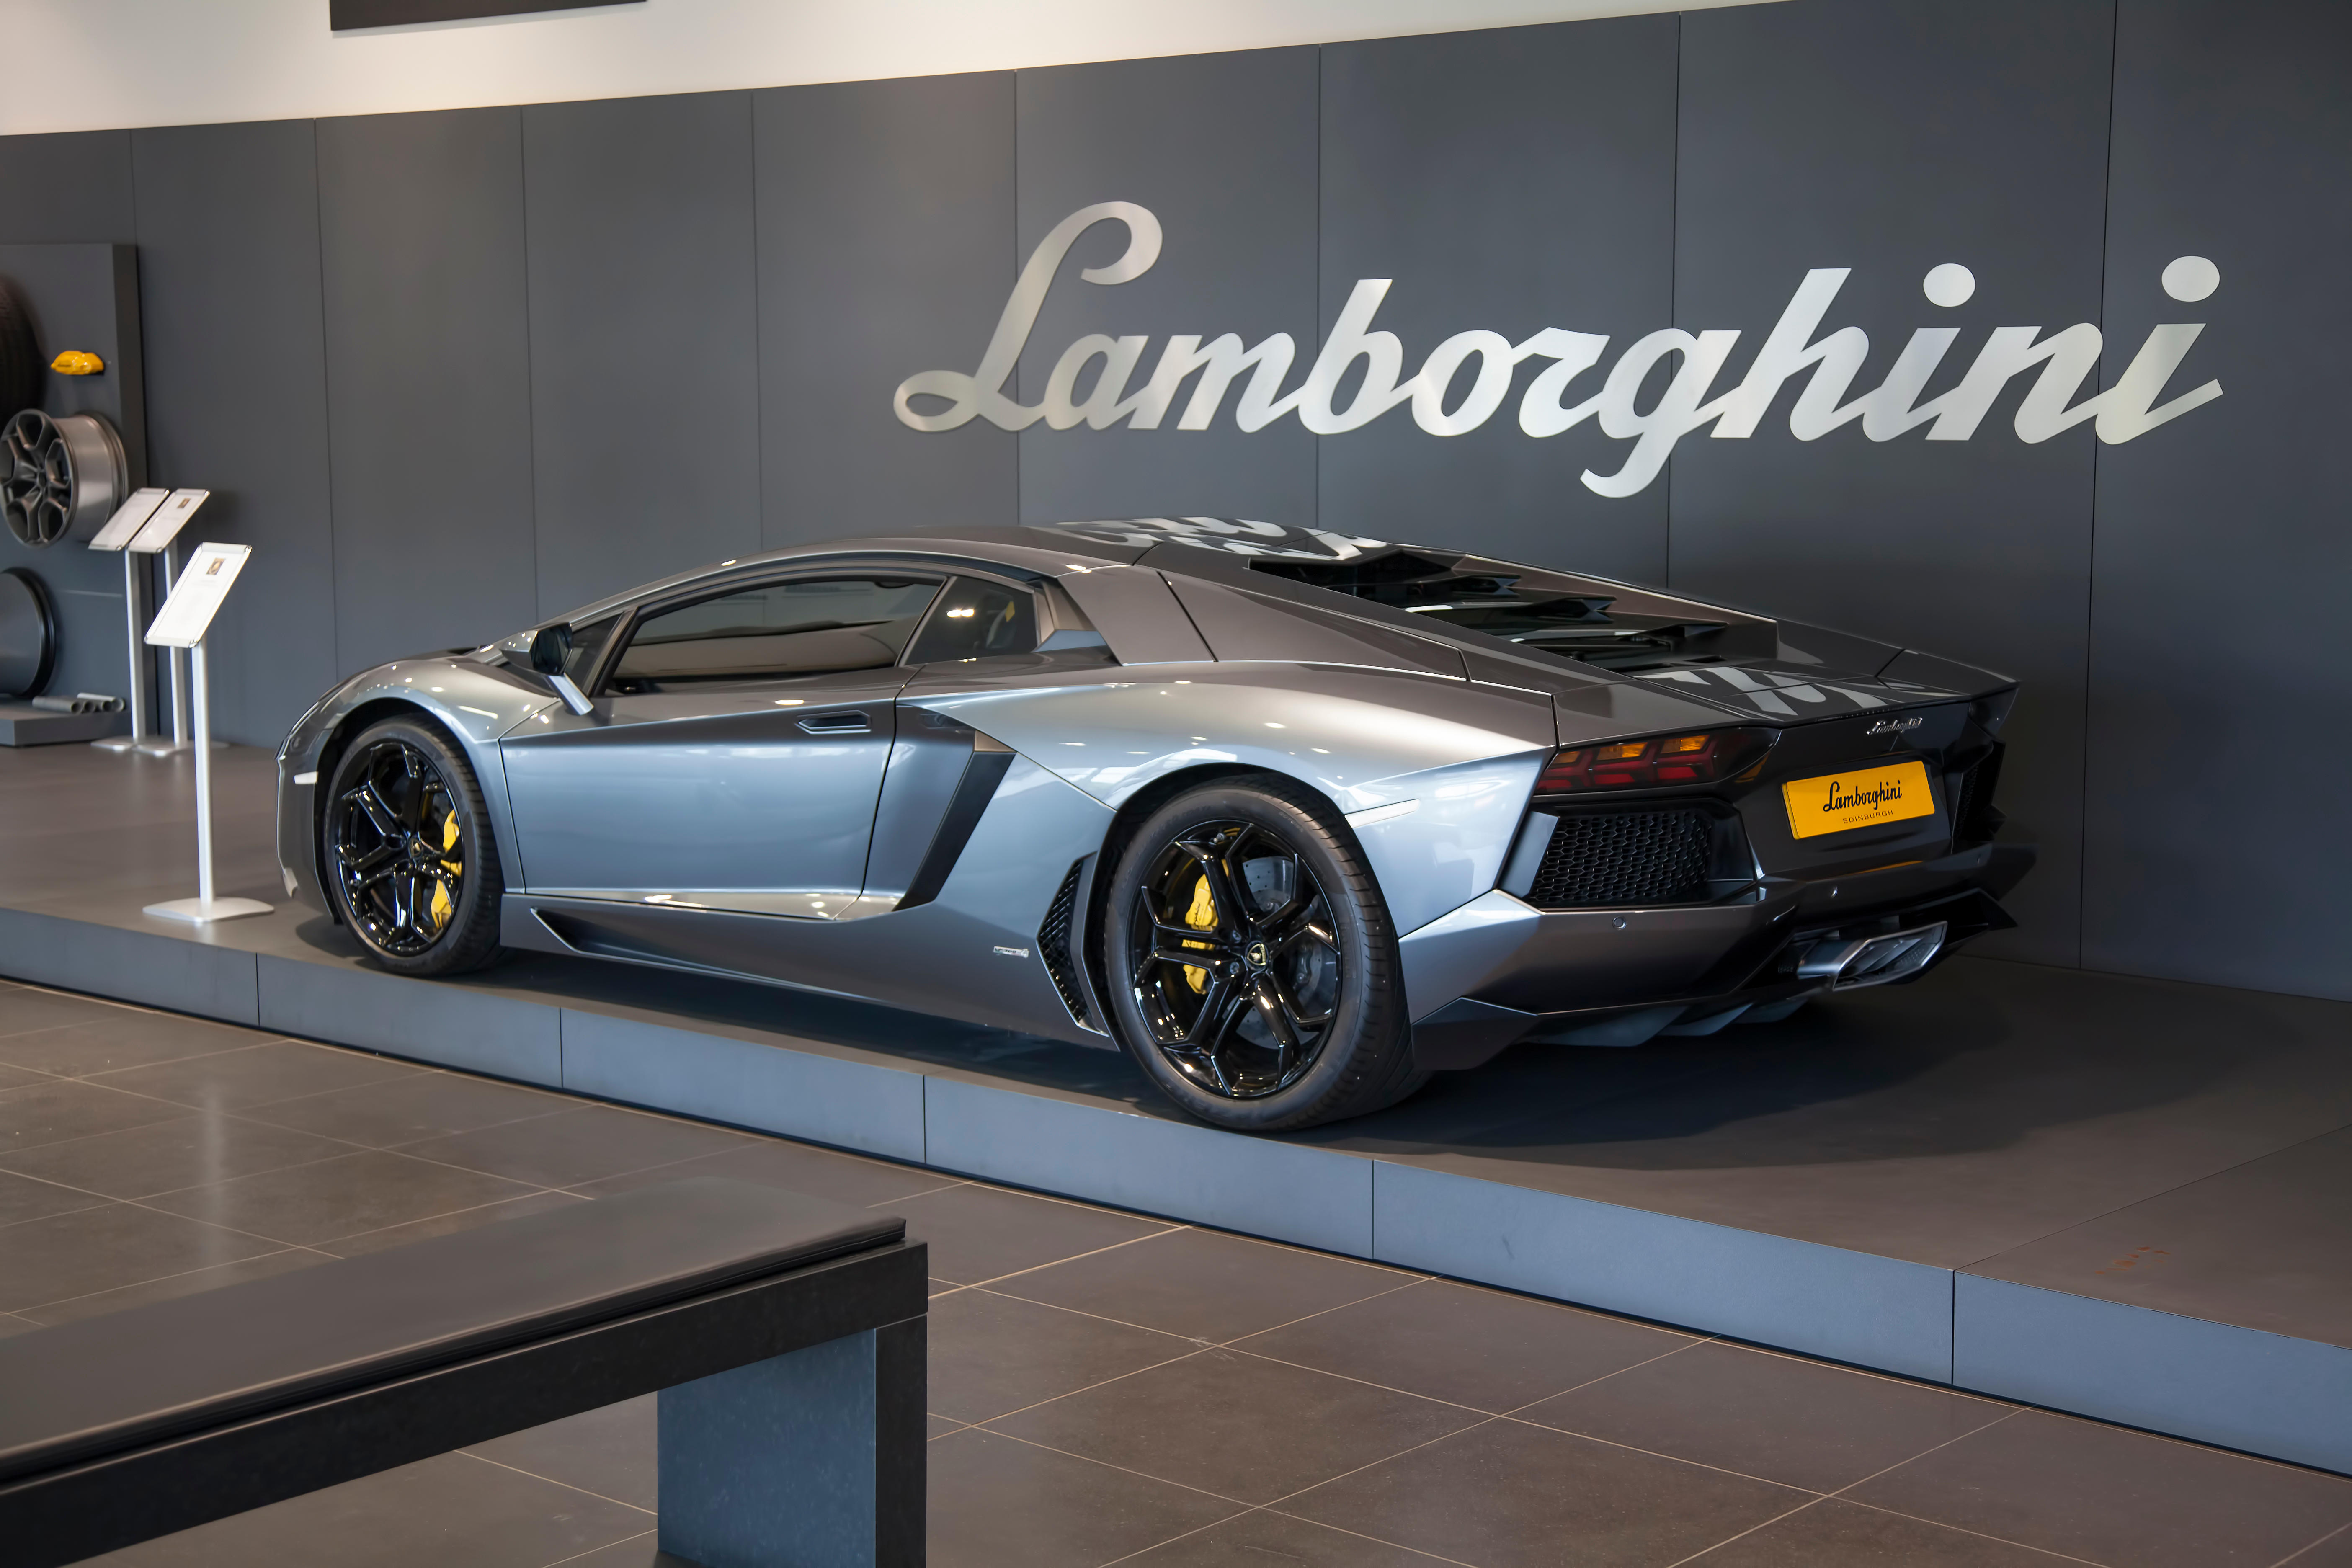 Images Lamborghini Edinburgh